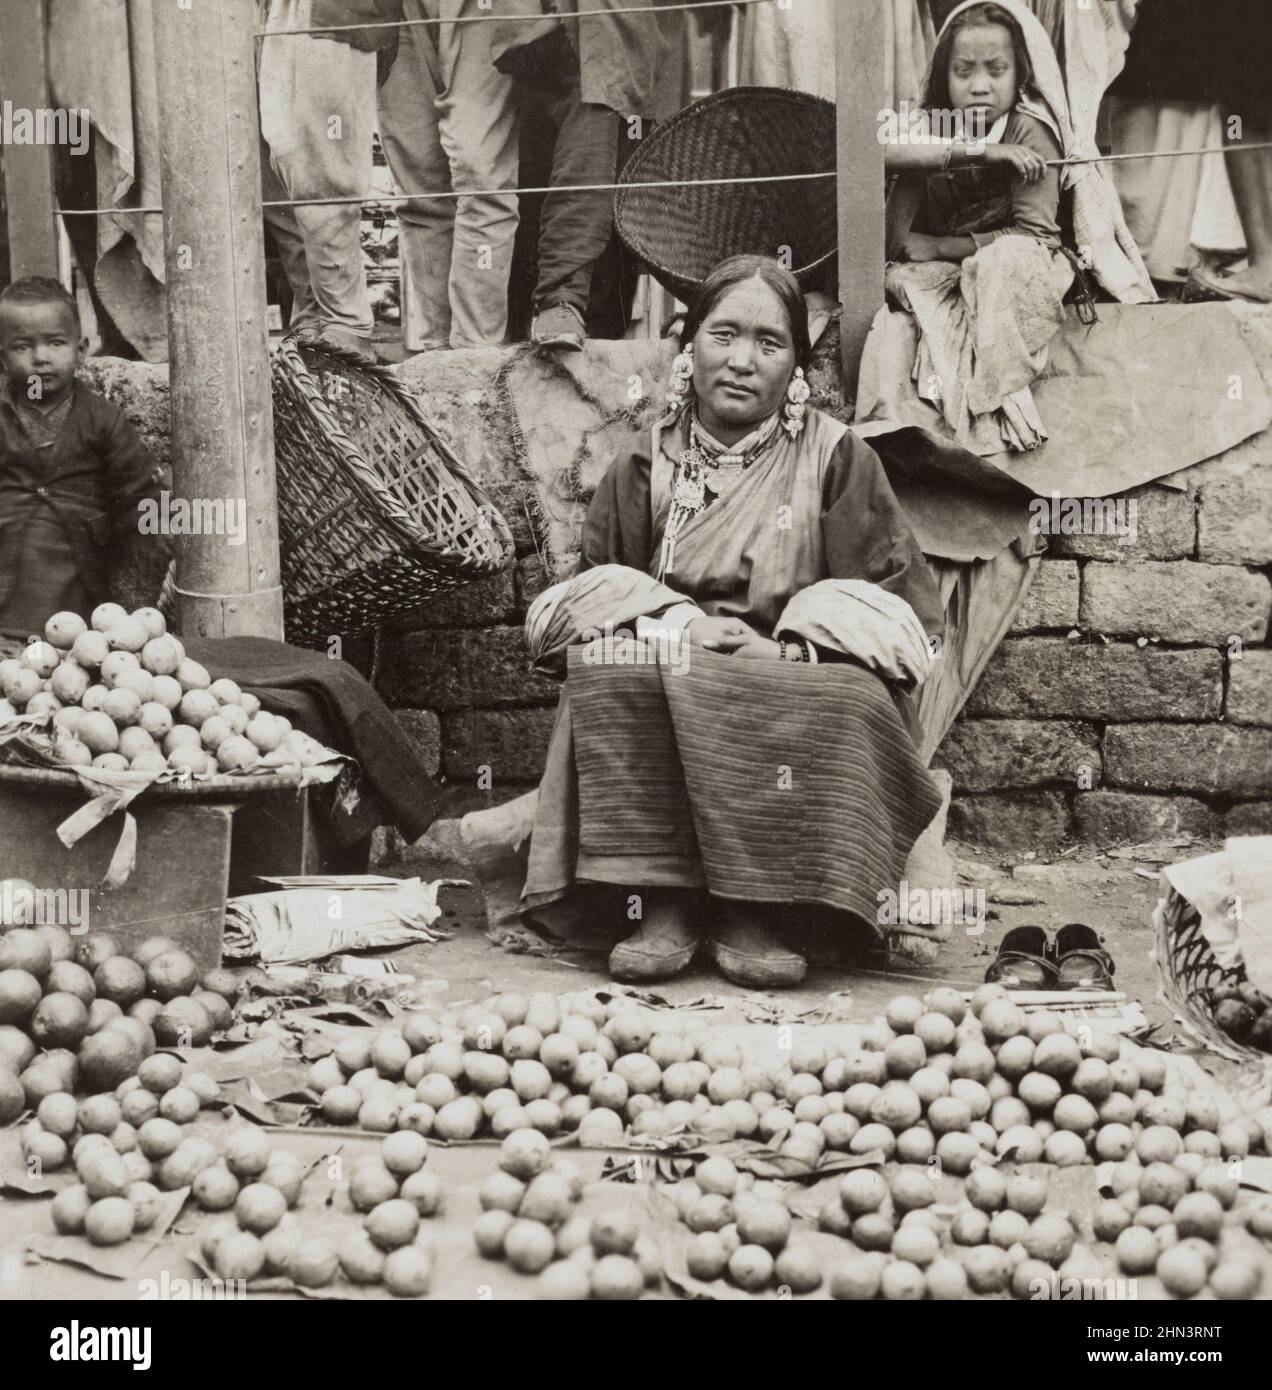 Foto vintage del vendedor de guayaba en Darjeeling. India británica. 1900s Foto de stock